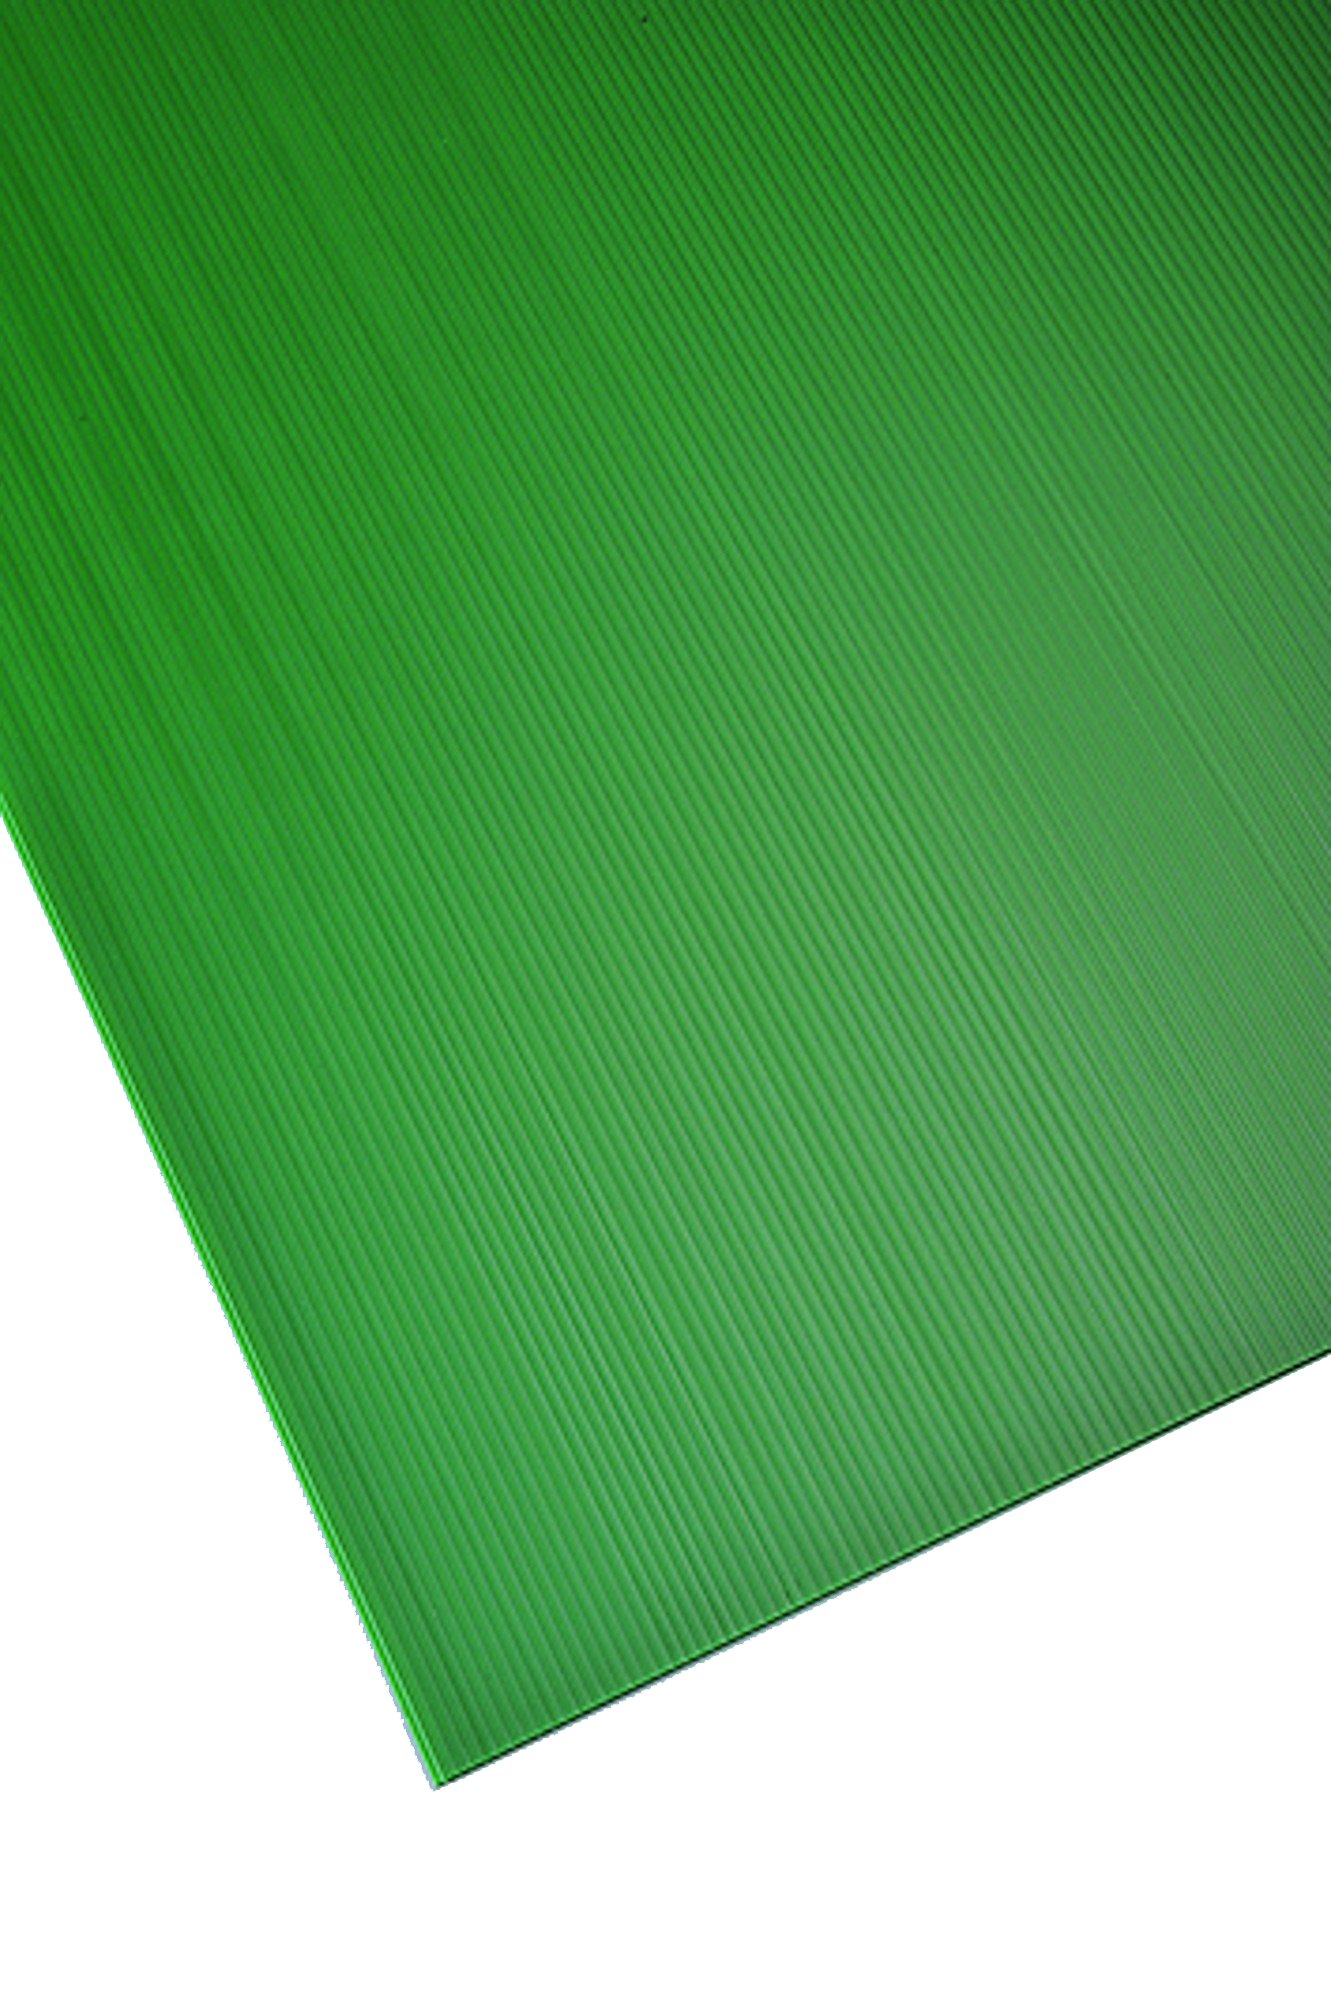 Placa de polipropileno verde opaco de 2.5 mm de grosor y 150x50cm